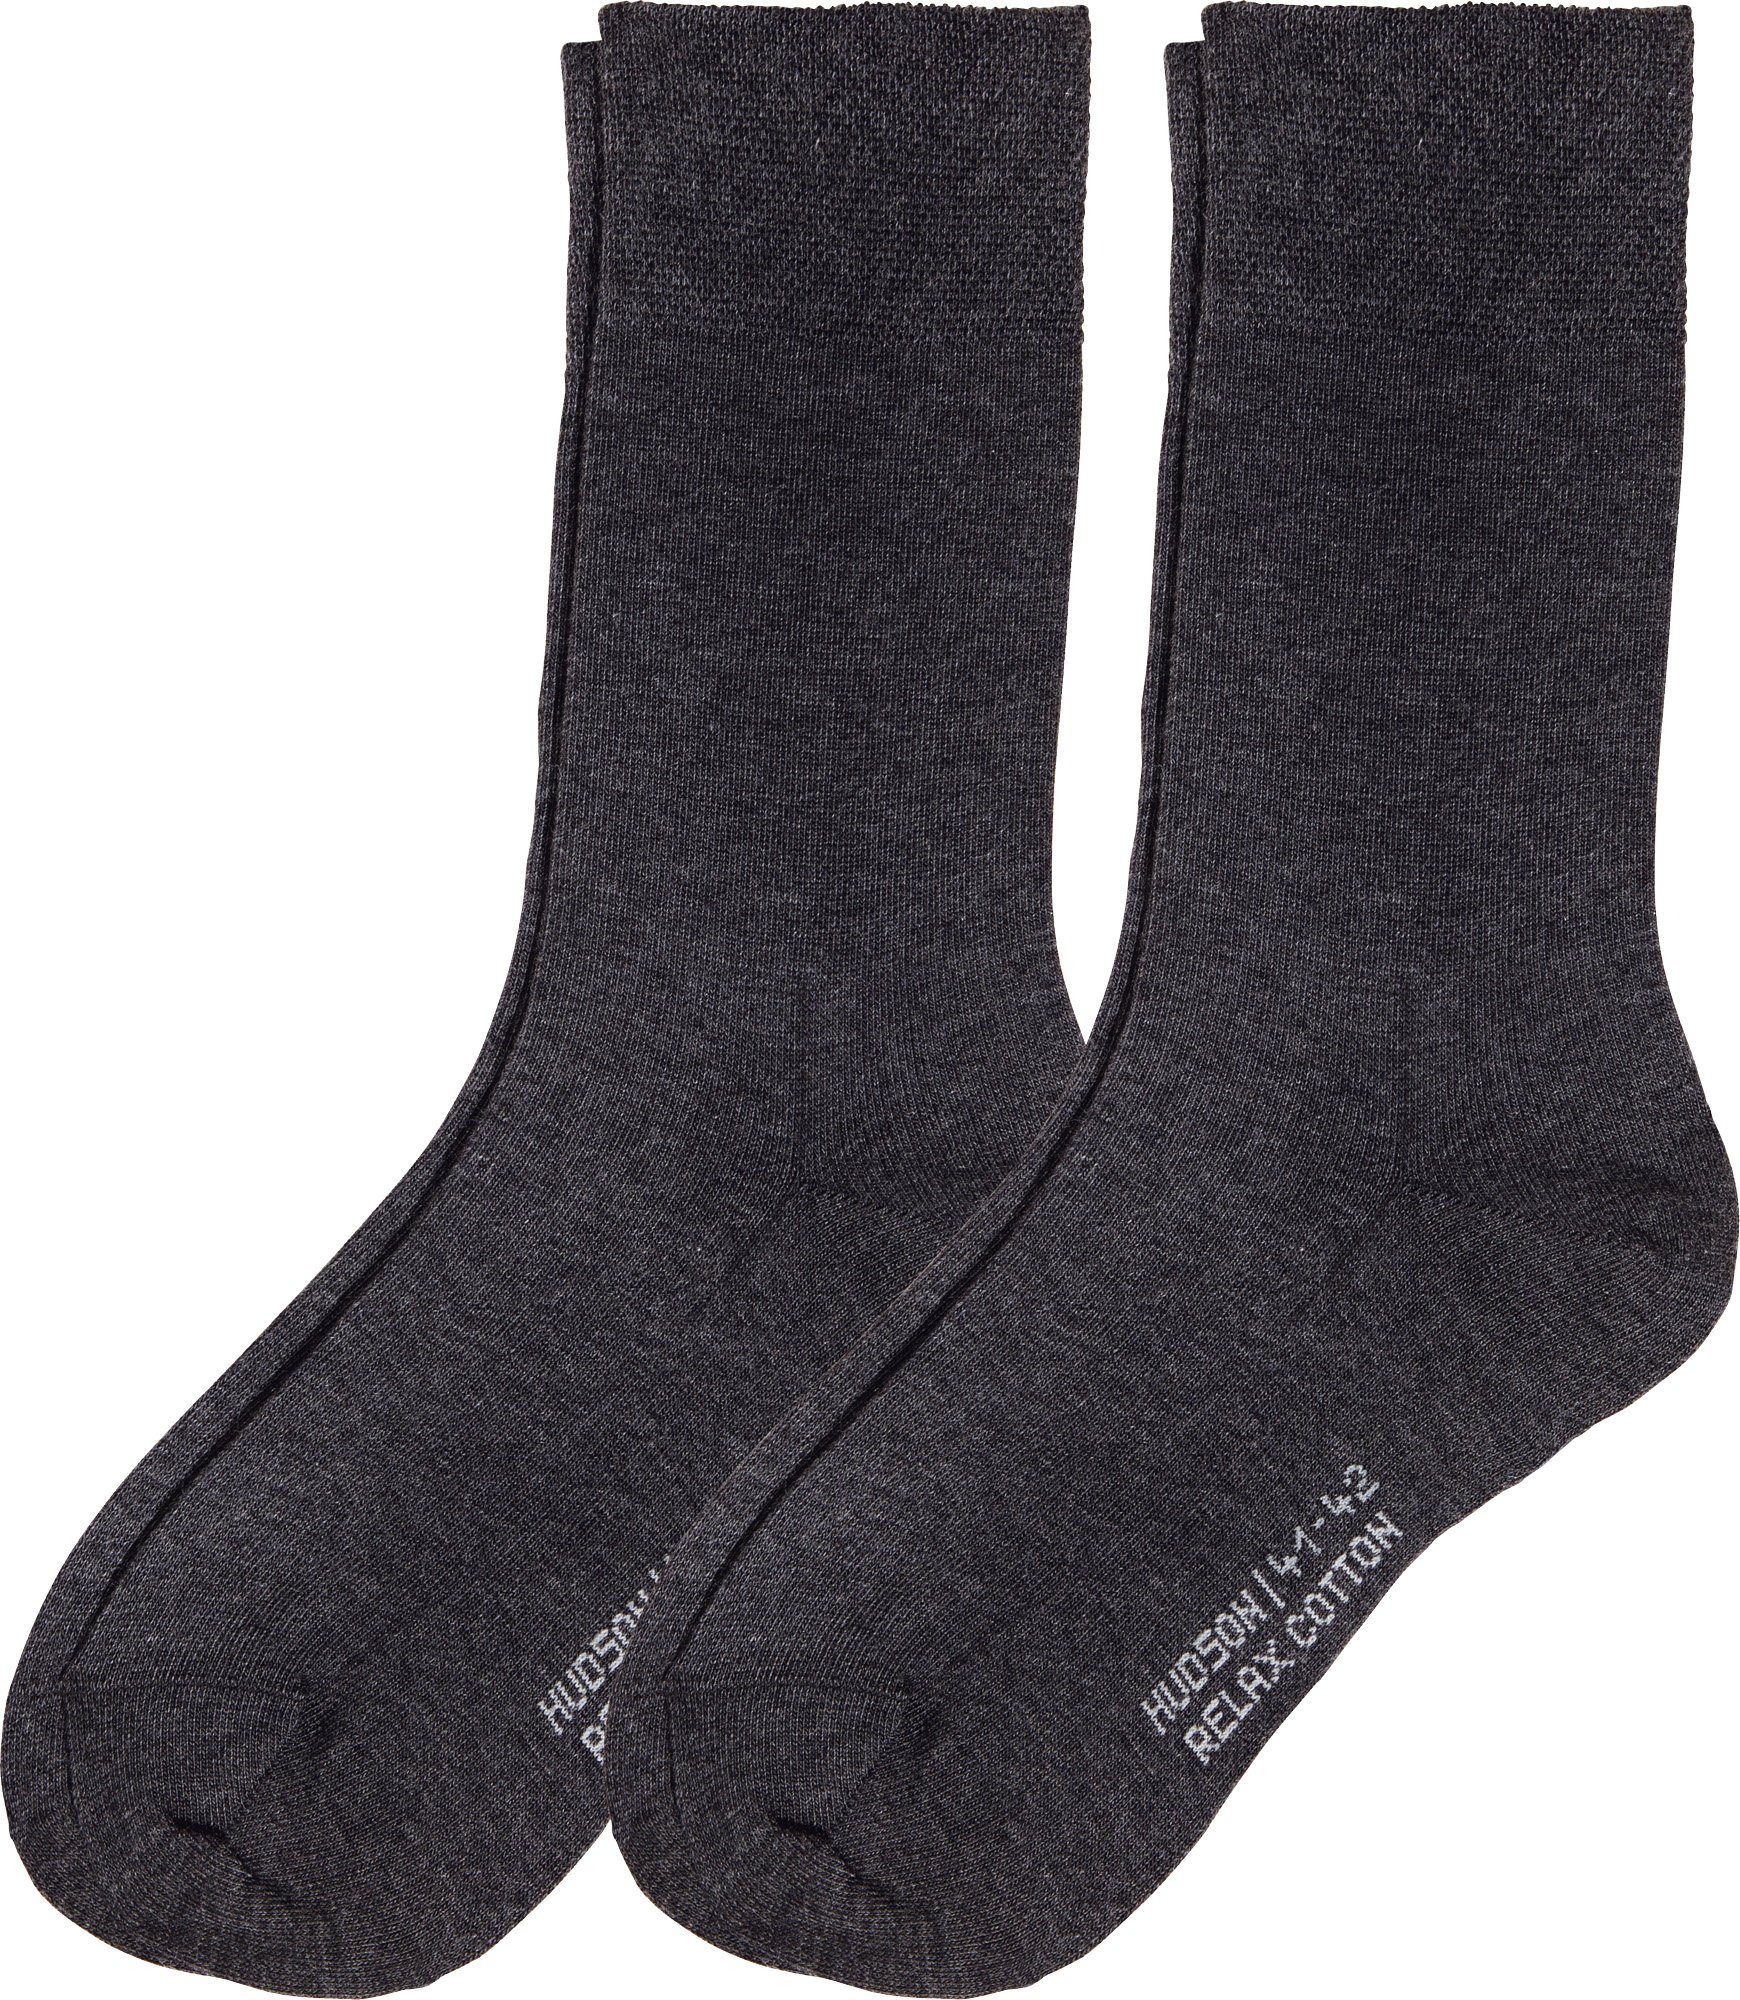 Hudson Socken Herren-Socken 2 Paar Uni graphit meliert